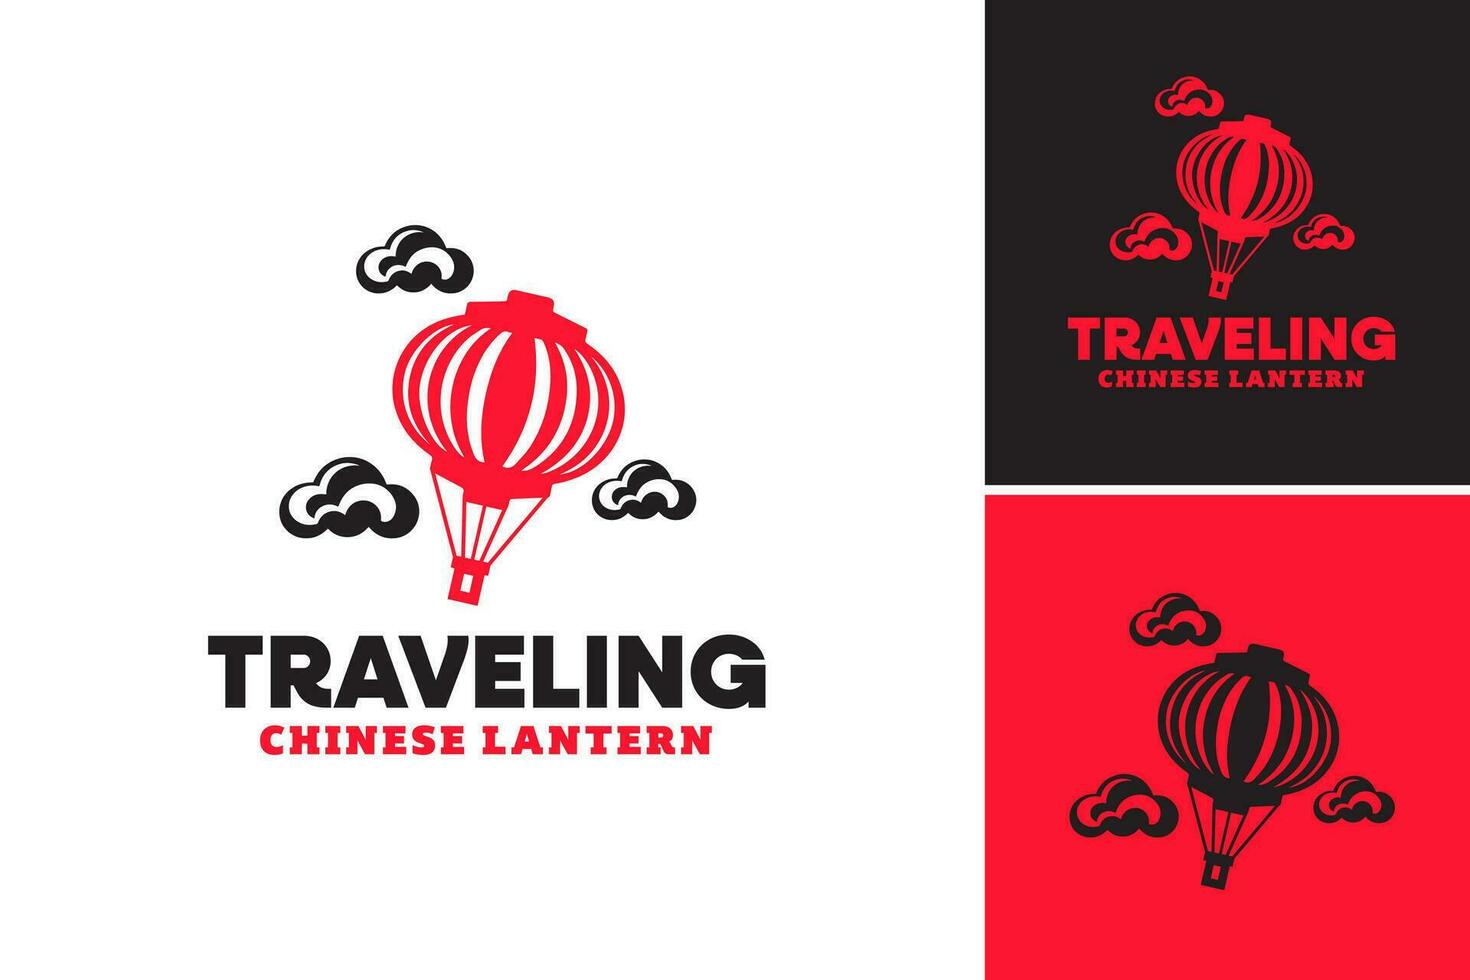 de viaje chino logo es un diseño activo adecuado para viaje agencias o negocios con un chino cultural tema, como eso caracteristicas un logo diseño inspirado por chino viaje elementos. vector